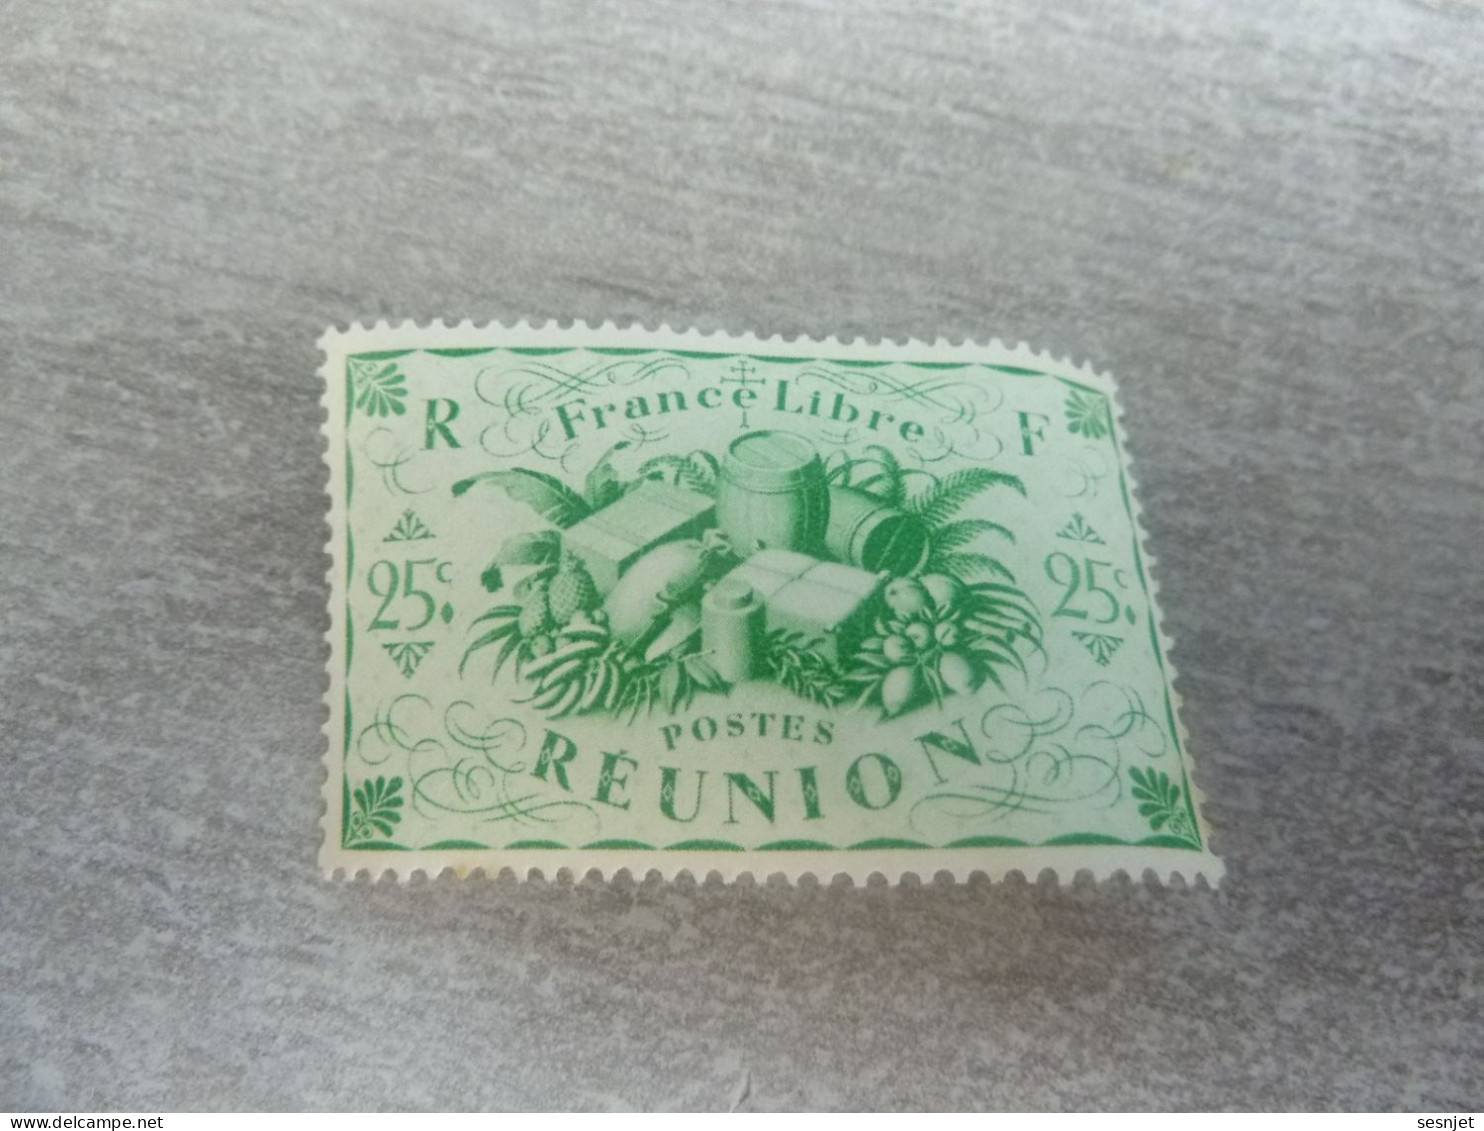 Série De Londres - France-Libre - Réunion  - 25c. - Yt 235 - Vert-jaune - Neuf Sans Trace De Charnière - Année 1943 - - Neufs